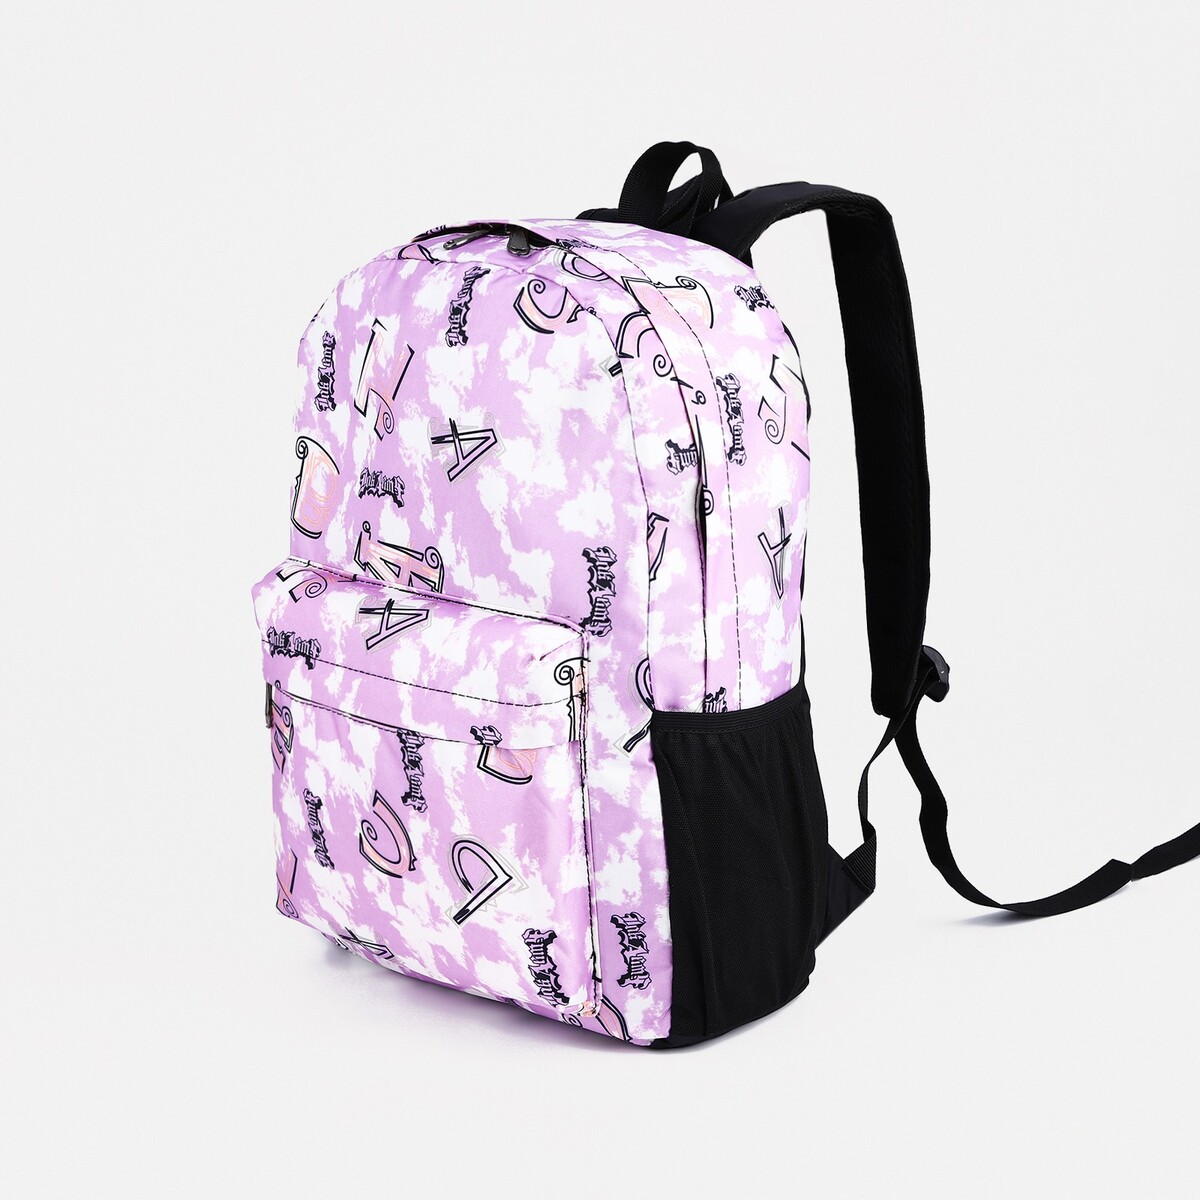 Рюкзак школьный из текстиля на молнии, 3 кармана, цвет фиолетовый рюкзак школьный из текстиля на молнии 3 кармана пенал фиолетовый